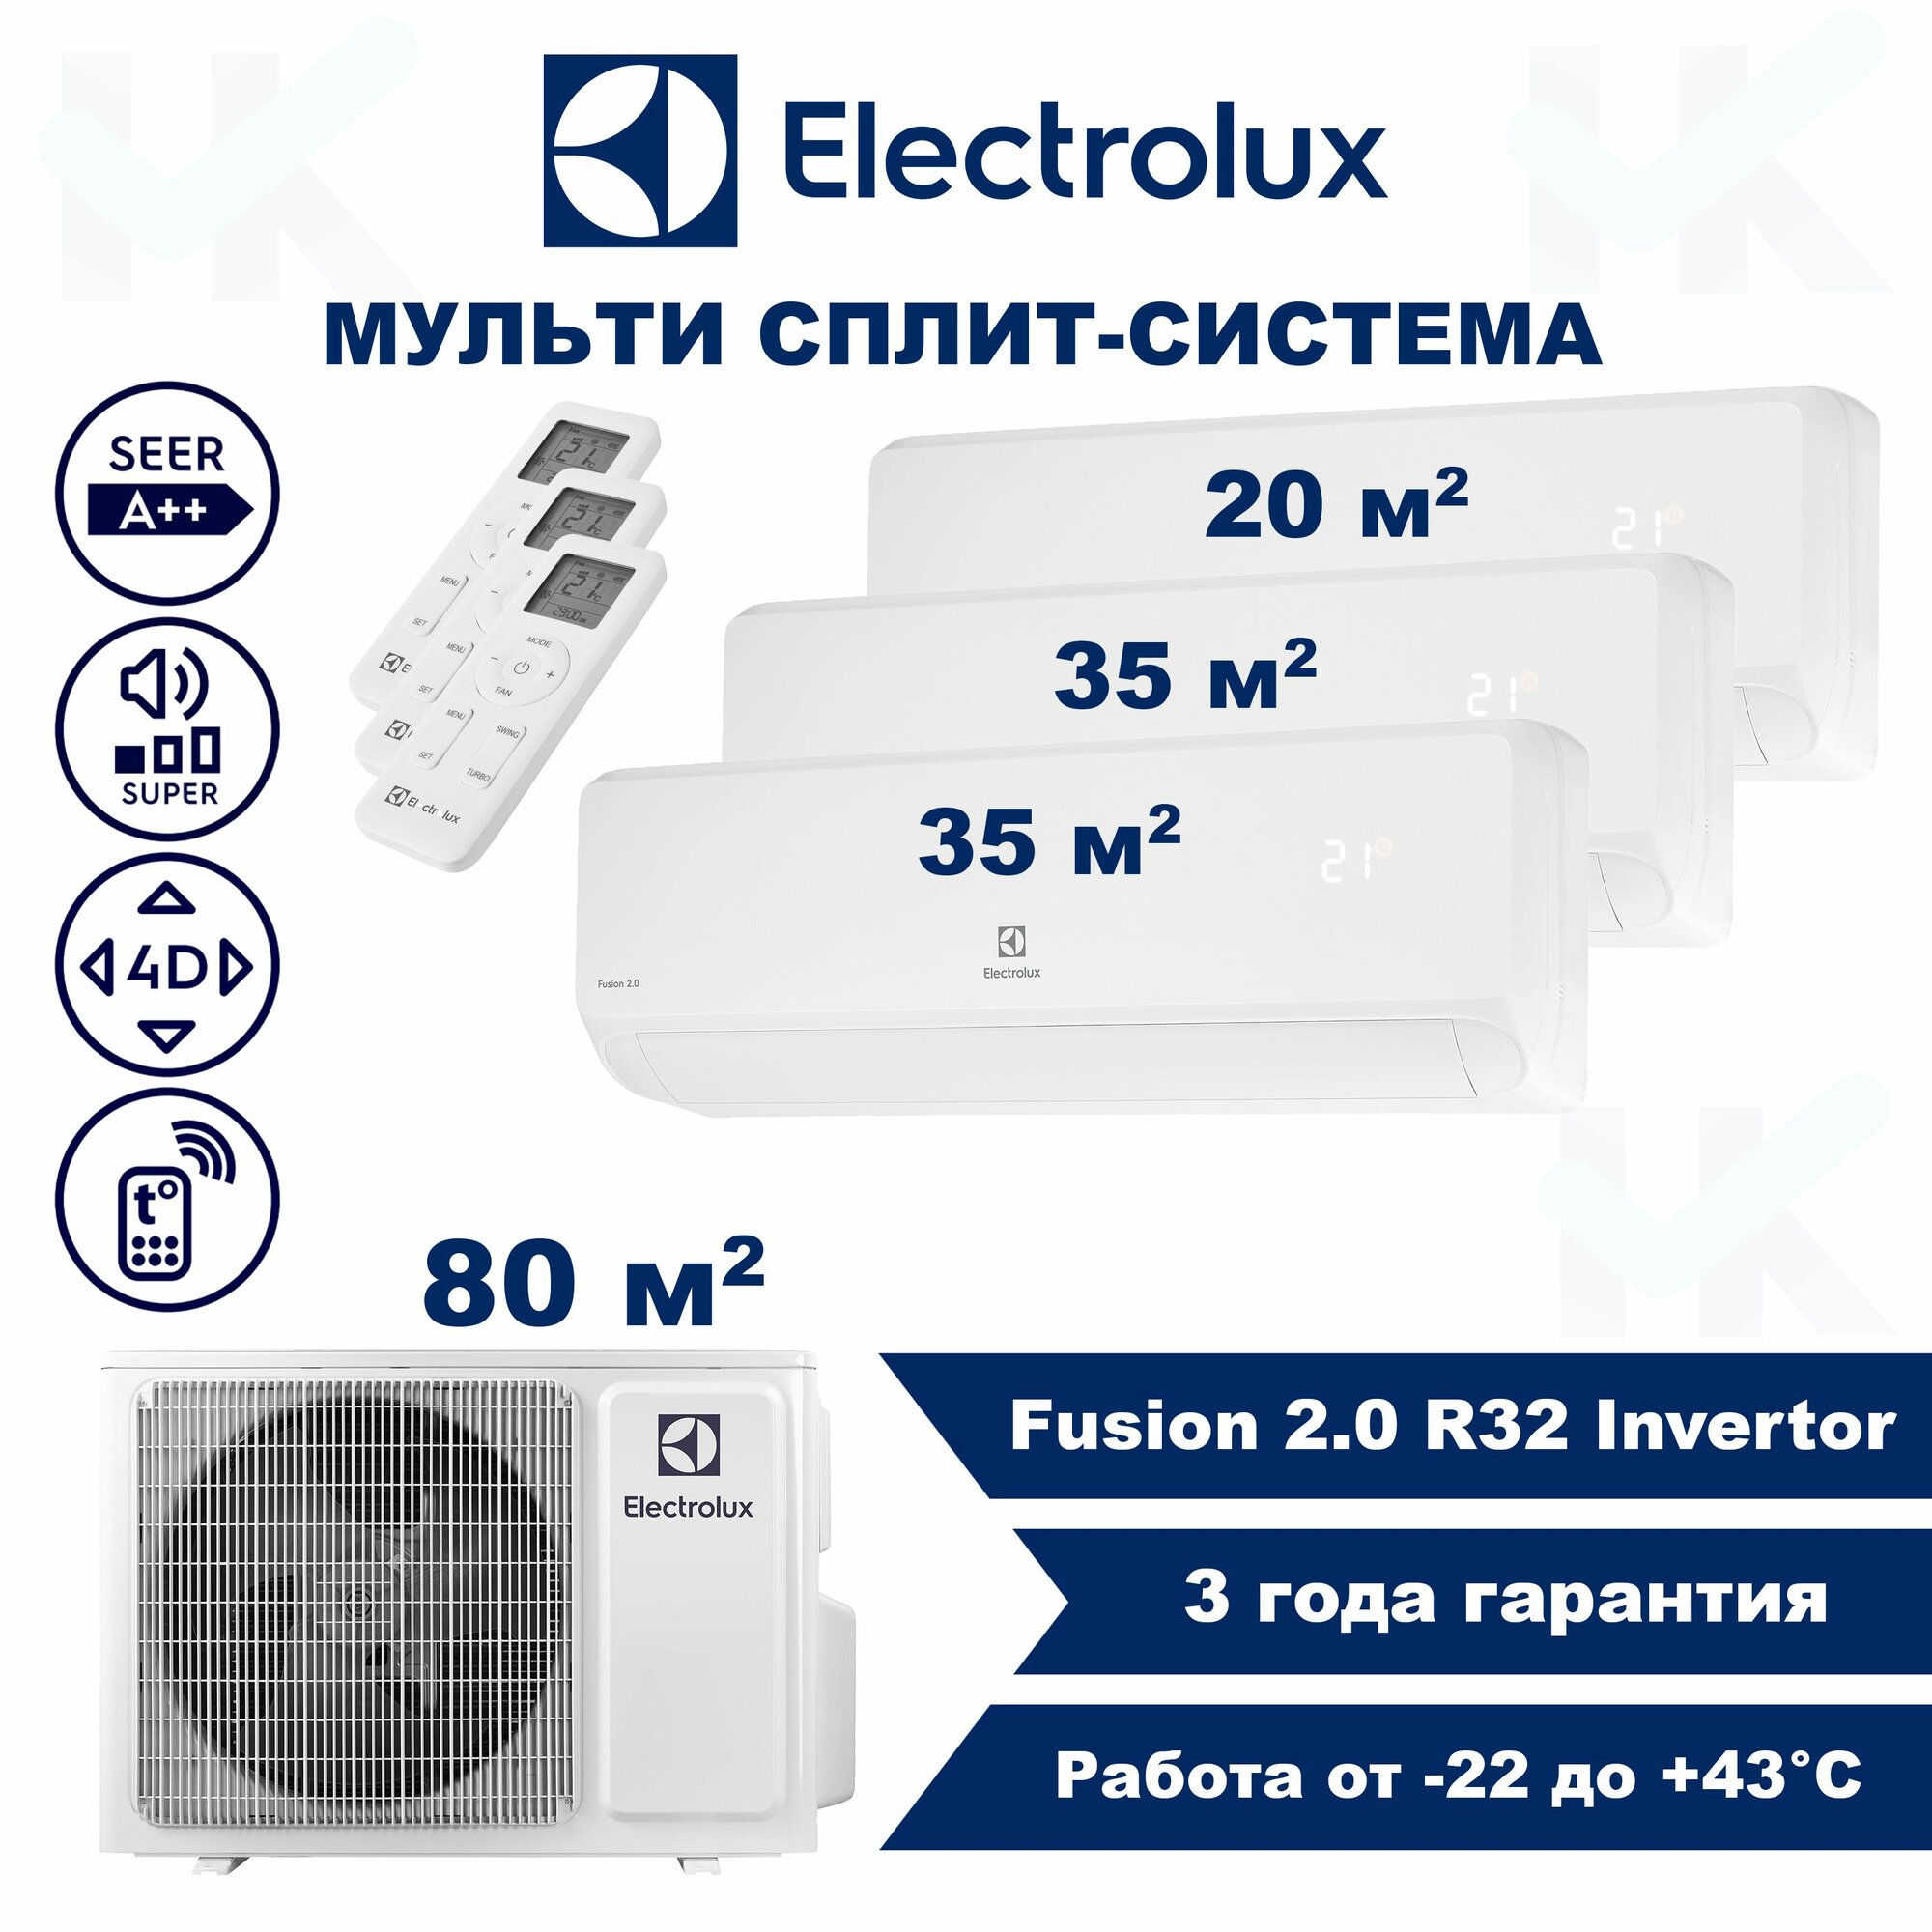 Инверторная мульти сплит-система ELECTROLUX серии Fusion 2.0 на 3 комнаты (20 м2 + 35 м2 + 35 м2) с наружным блоком 80 м2, Попеременная работа